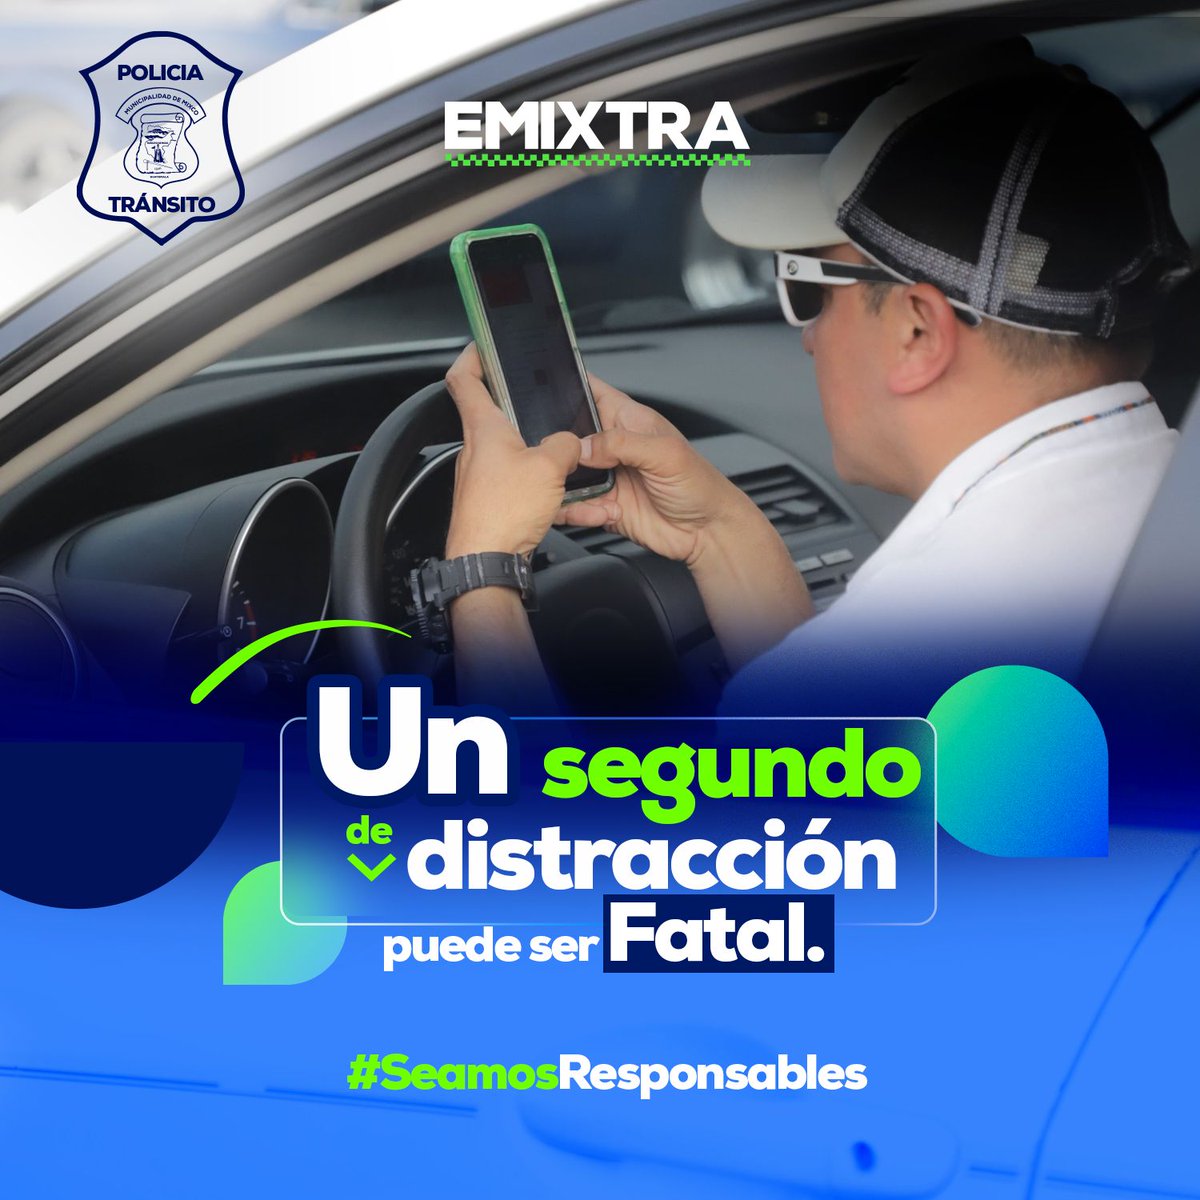 No textees al conducir un vehículo, recuerda que un segundo de distracción puede ser fatal, cuida tu vida y la de los demás.
#TránsitoMixco
#EducaciónVíal